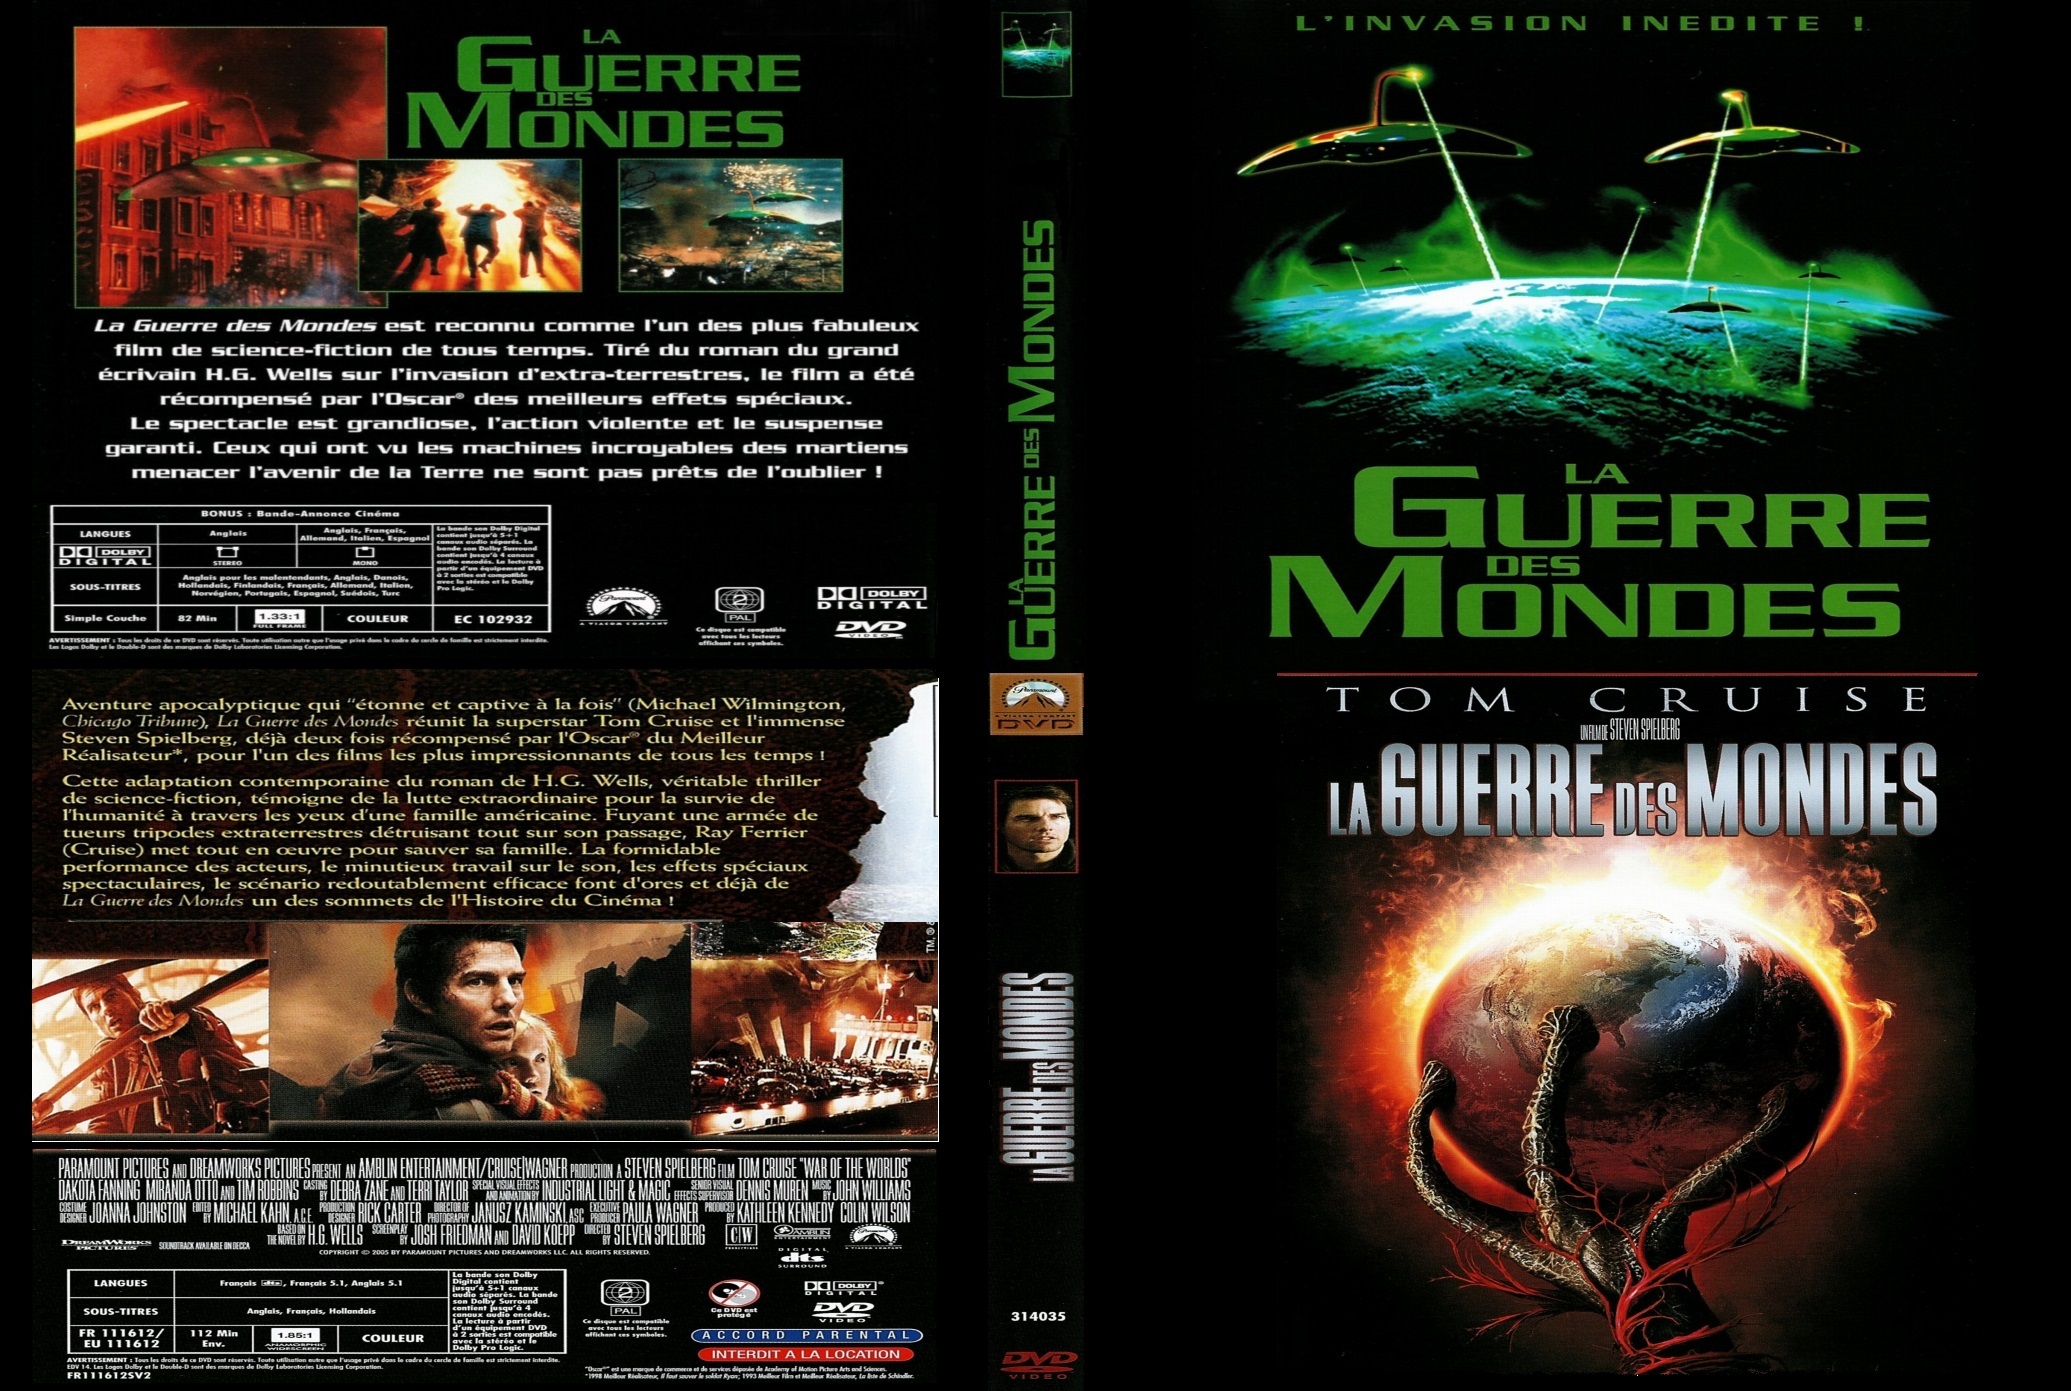 Jaquette DVD La Guerre des Mondes 1953 - 2005 custom